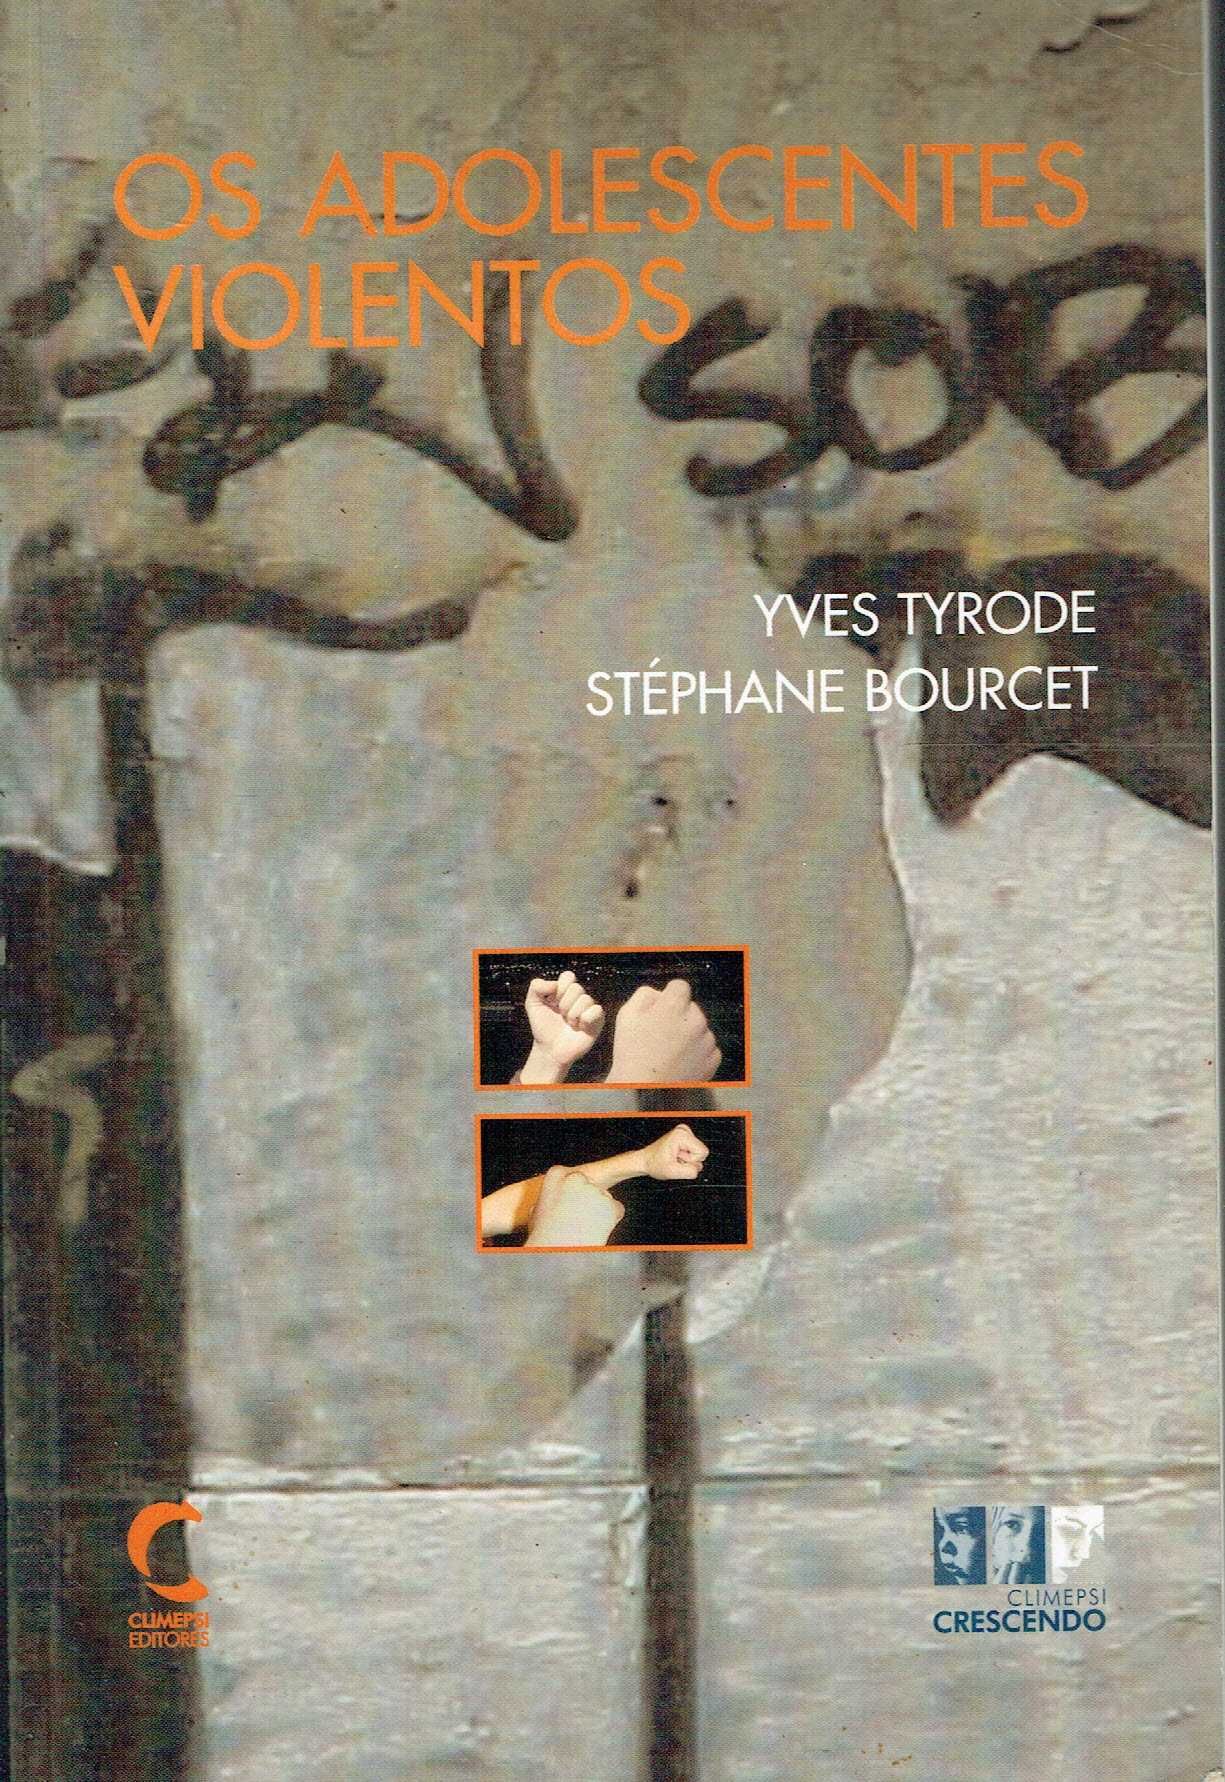 11942

Os Adolescentes Violentos
de Stéphane Bourcet